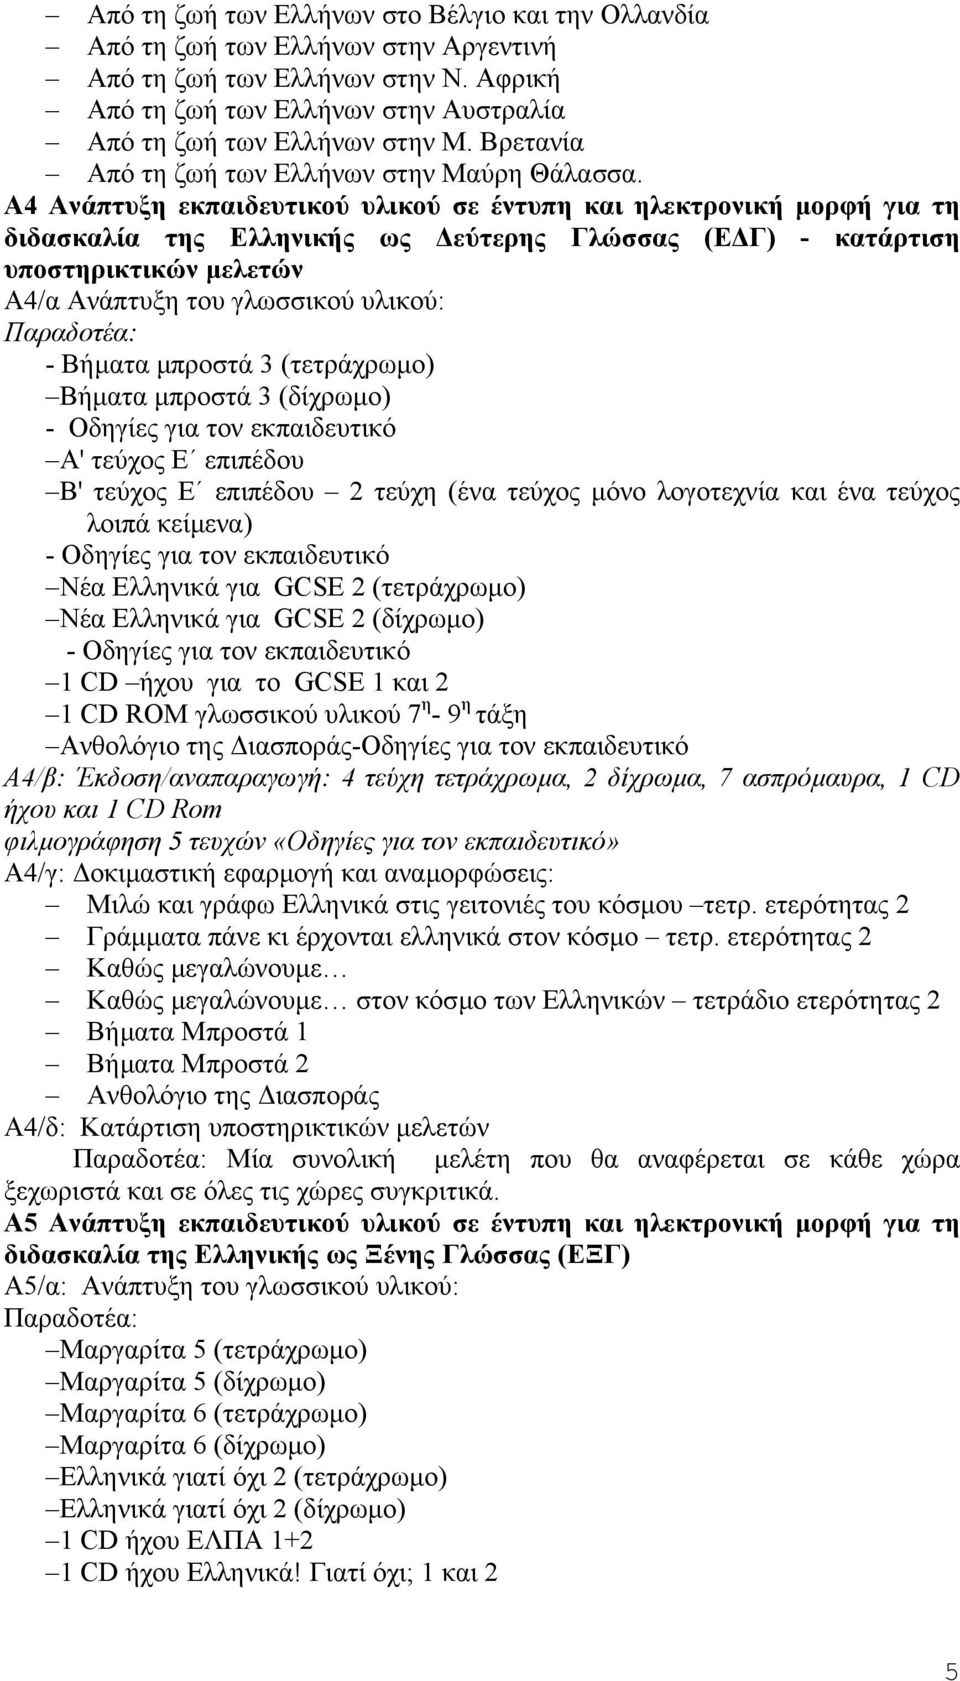 Α4 Ανάπτυξη εκπαιδευτικού υλικού σε έντυπη και ηλεκτρονική µορφή για τη διδασκαλία της Ελληνικής ως εύτερης Γλώσσας (Ε Γ) - κατάρτιση υποστηρικτικών µελετών Α4/α Ανάπτυξη του γλωσσικού υλικού: